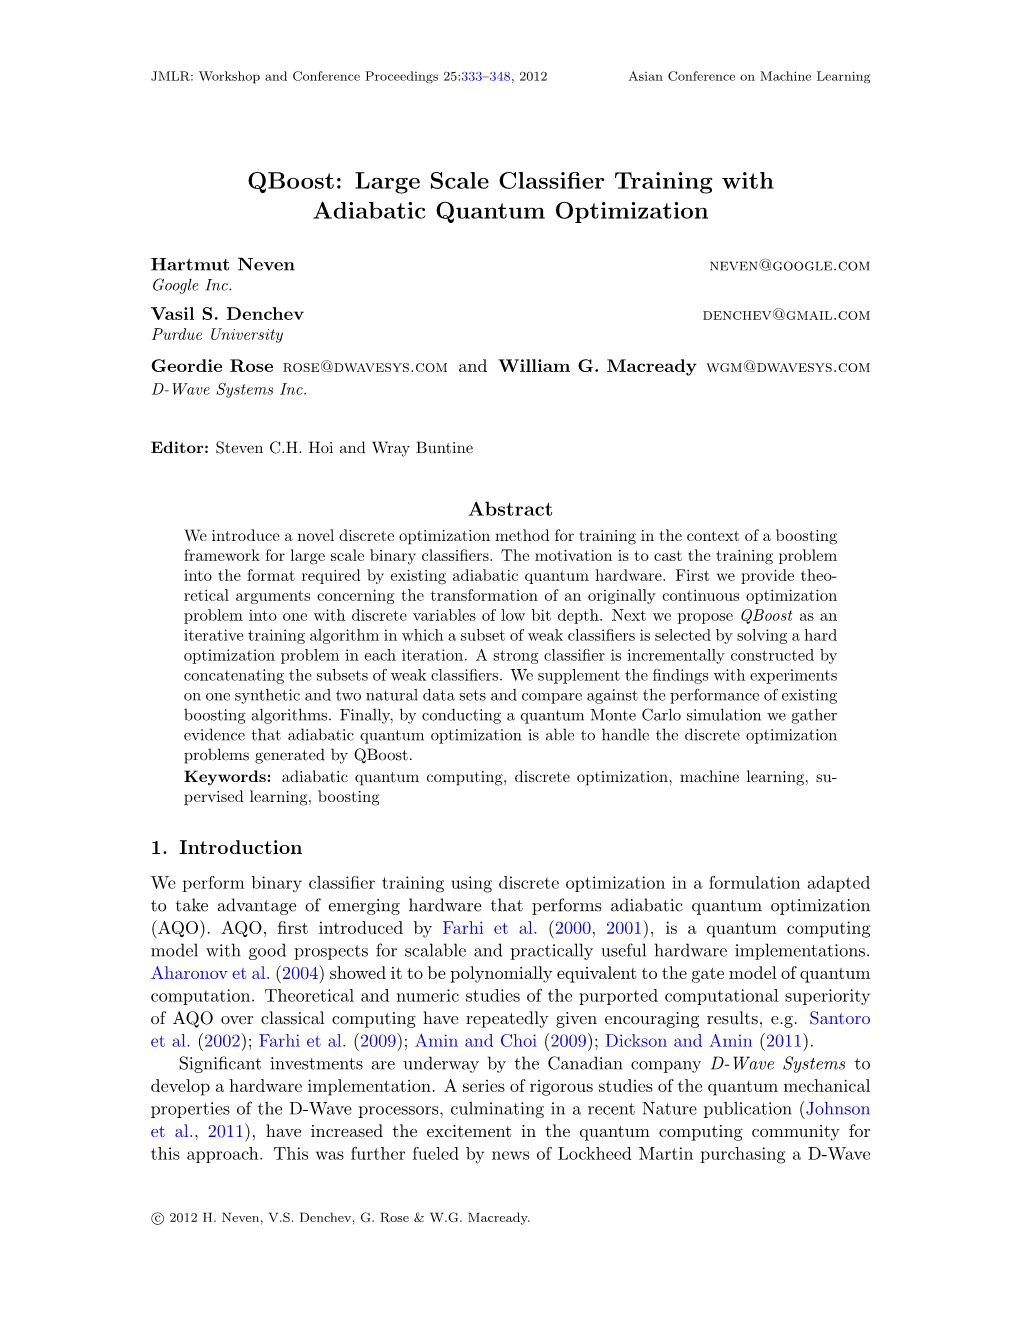 Qboost: Large Scale Classiﬁer Training with Adiabatic Quantum Optimization